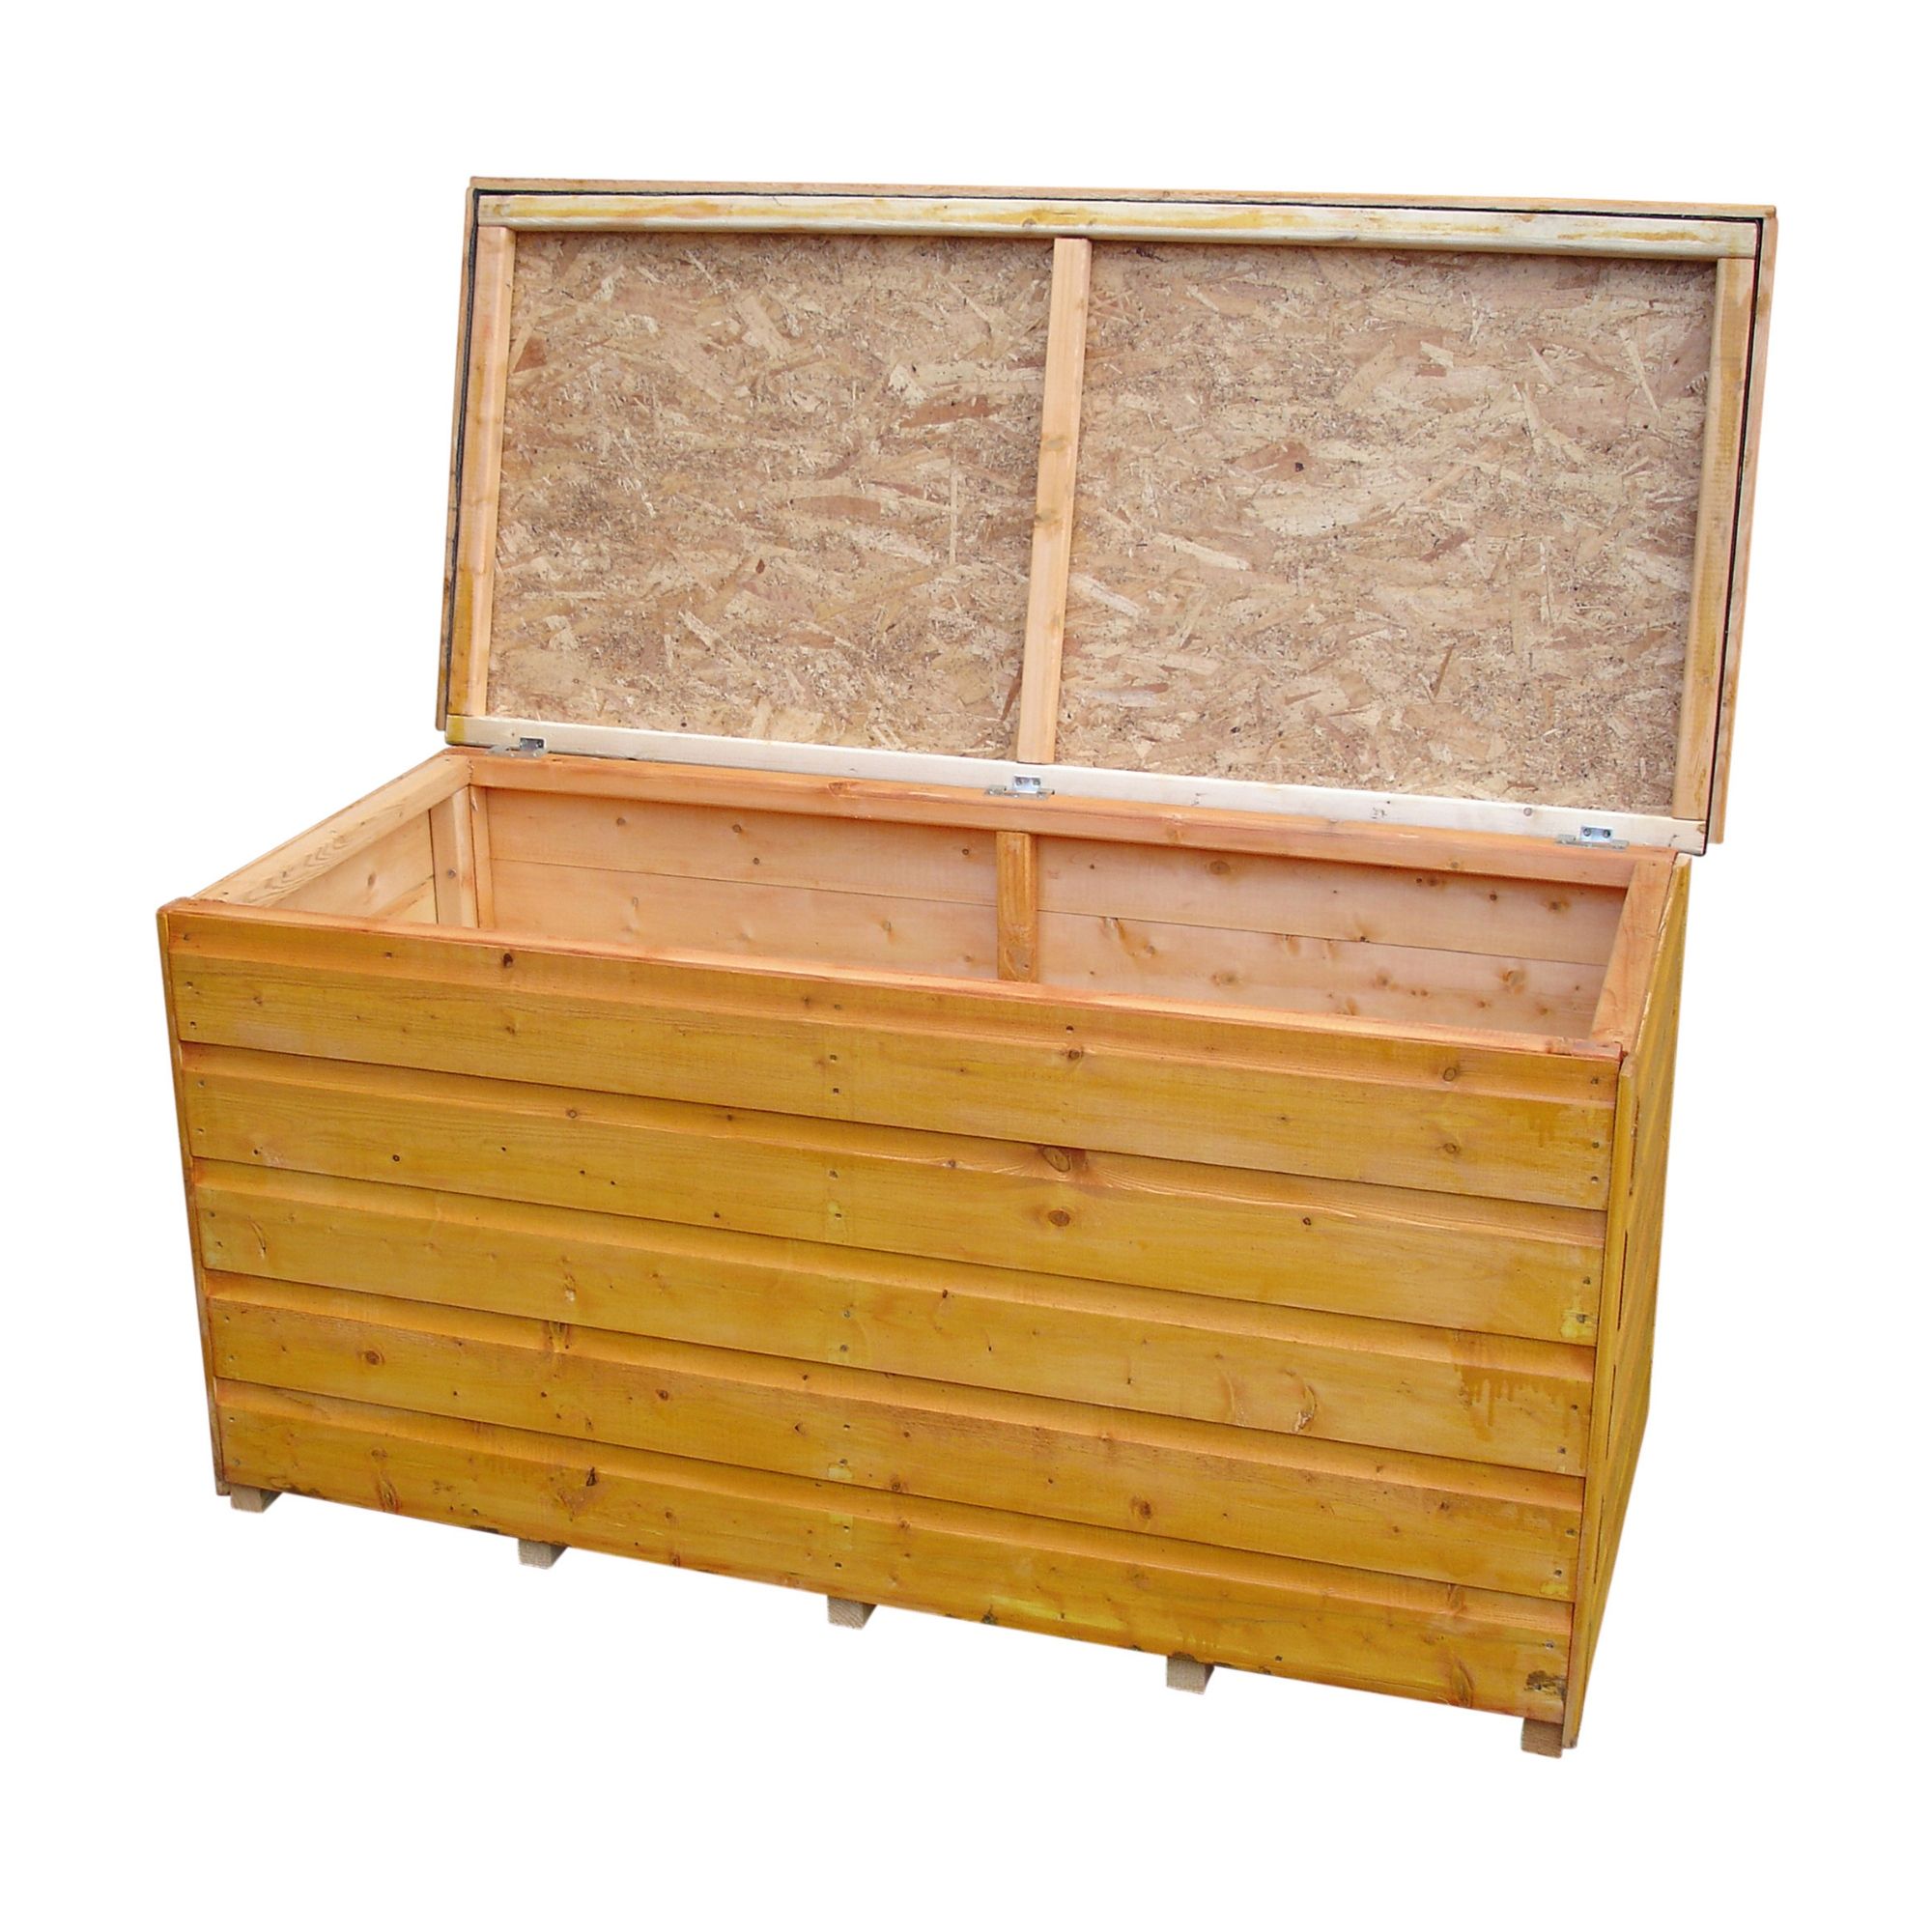 Shire Brown 4x2 Garden storage box